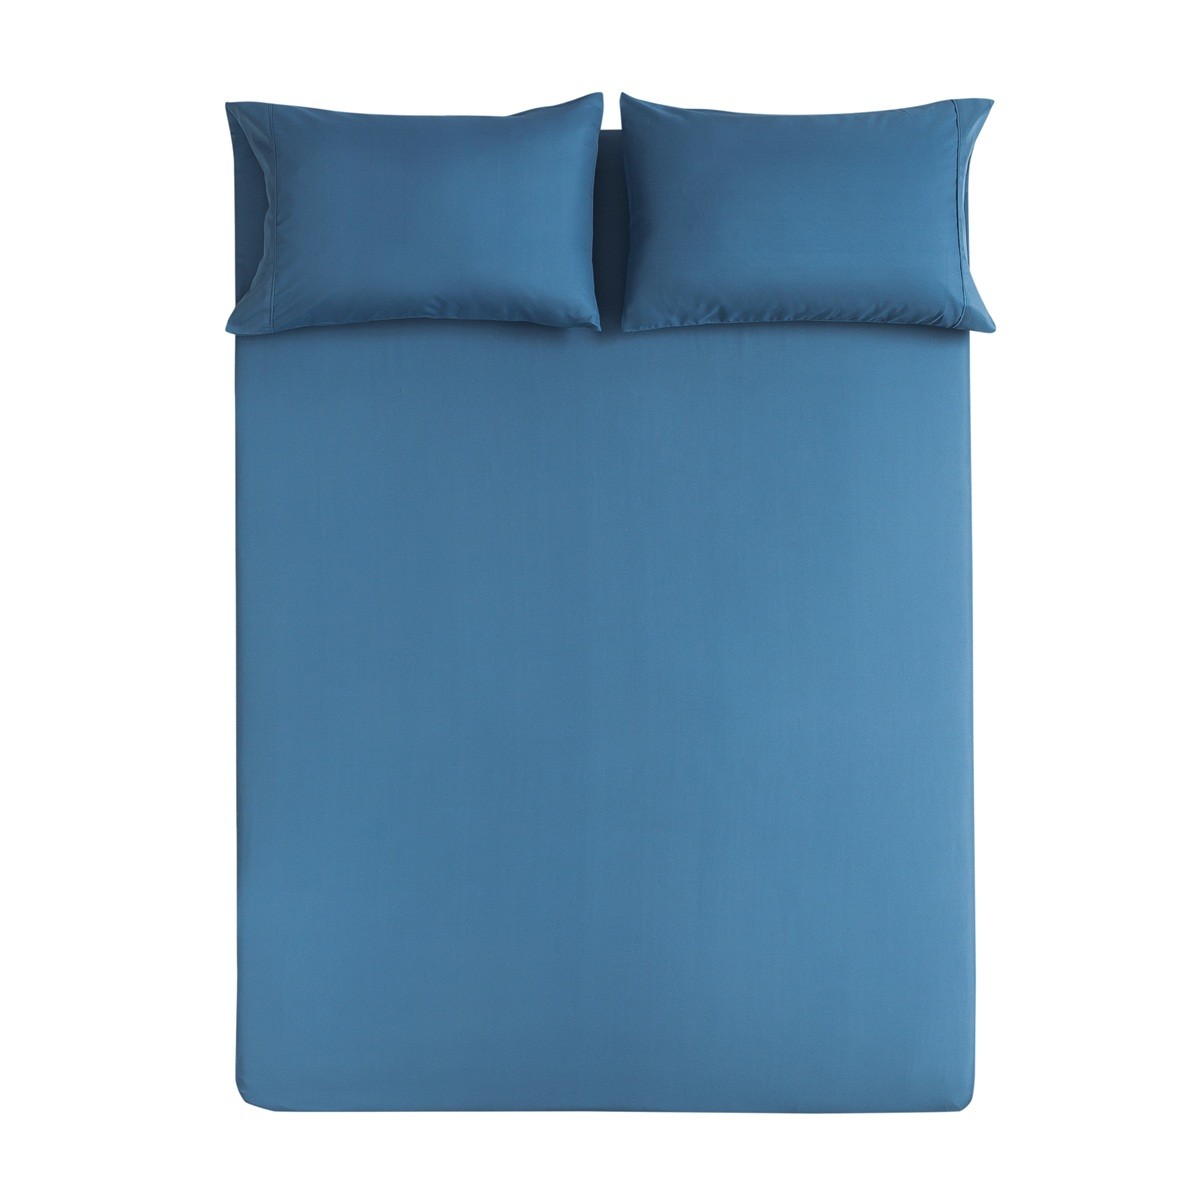 Best 100% Polyester Microfiber Bedroom Bedding Sets , Full Size Bed Comforter Sets wholesale